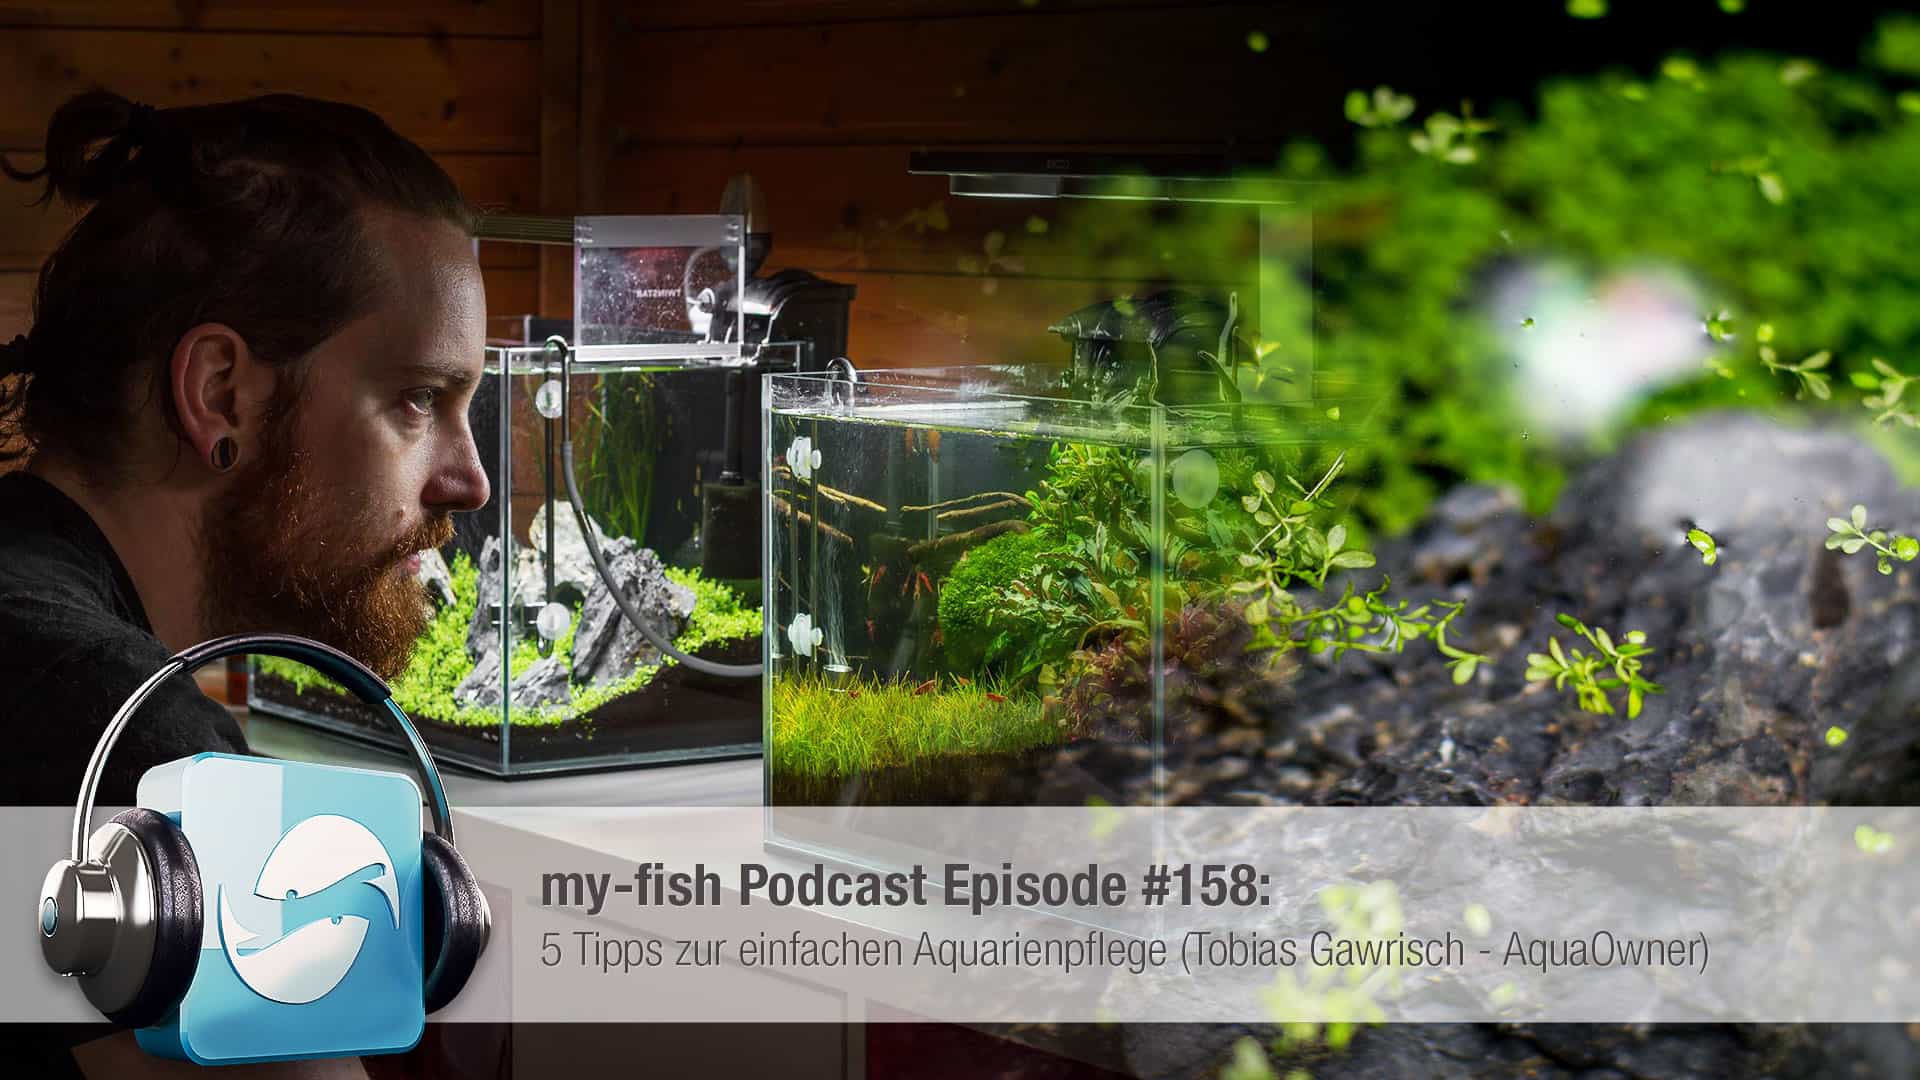 Podcast Episode #158: 5 Tipps zur einfachen Aquarienpflege (Tobias Gawrisch aka AquaOwner) 1